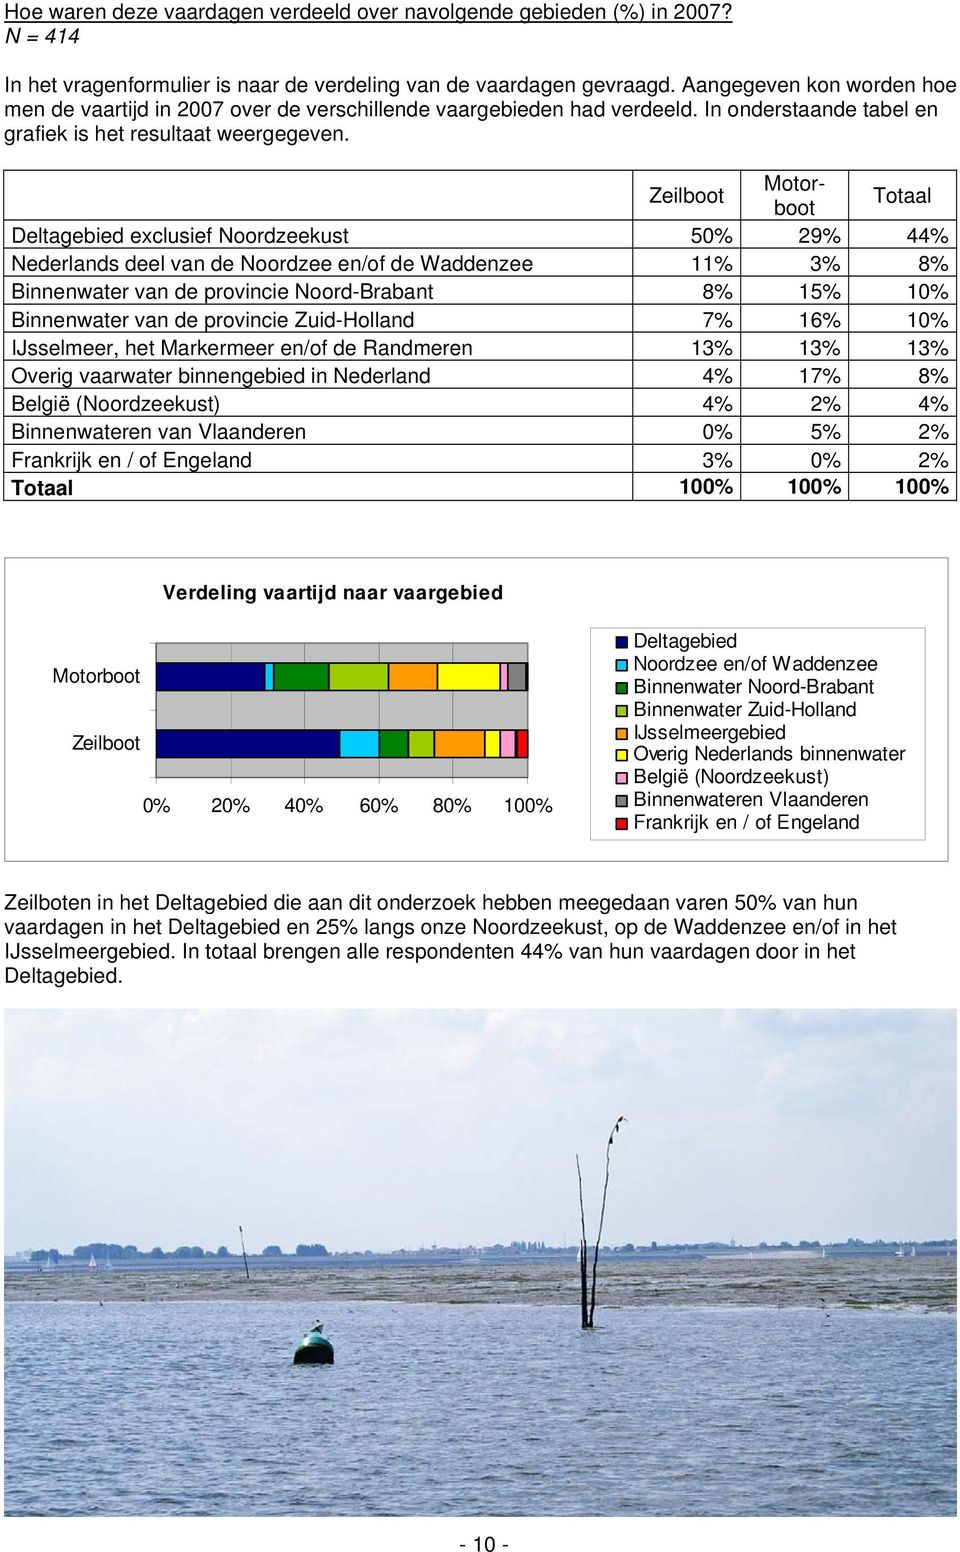 Zeilboot Motorboot Totaal Deltagebied exclusief Noordzeekust 50% 29% 44% Nederlands deel van de Noordzee en/of de Waddenzee 11% 3% 8% Binnenwater van de provincie Noord-Brabant 8% 15% 10% Binnenwater